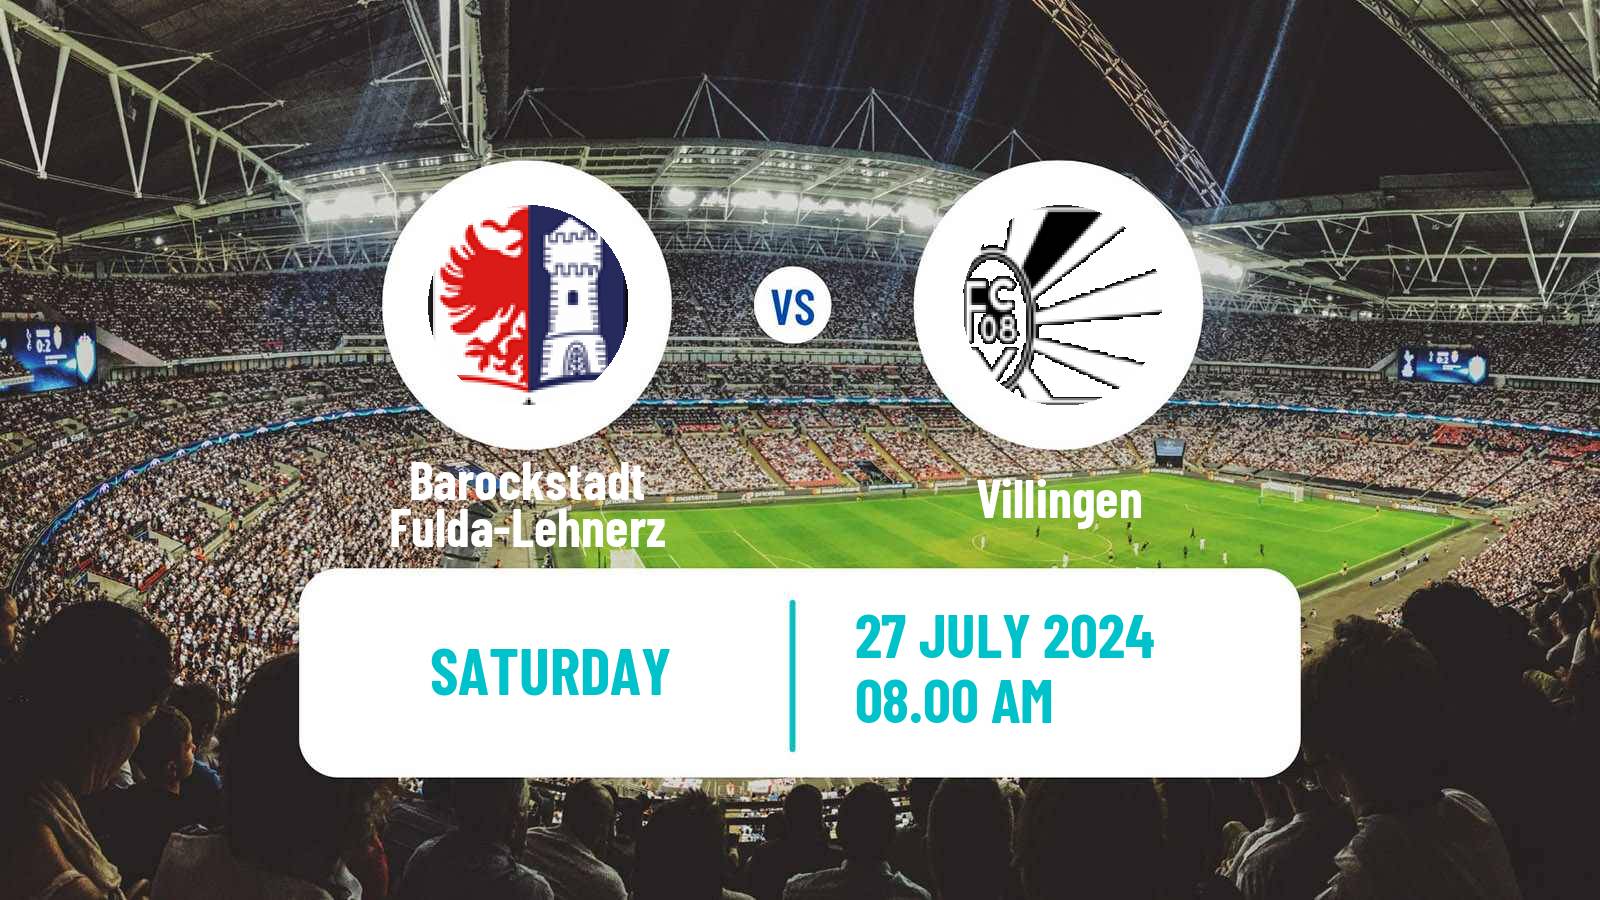 Soccer German Regionalliga Sudwest Barockstadt Fulda-Lehnerz - Villingen